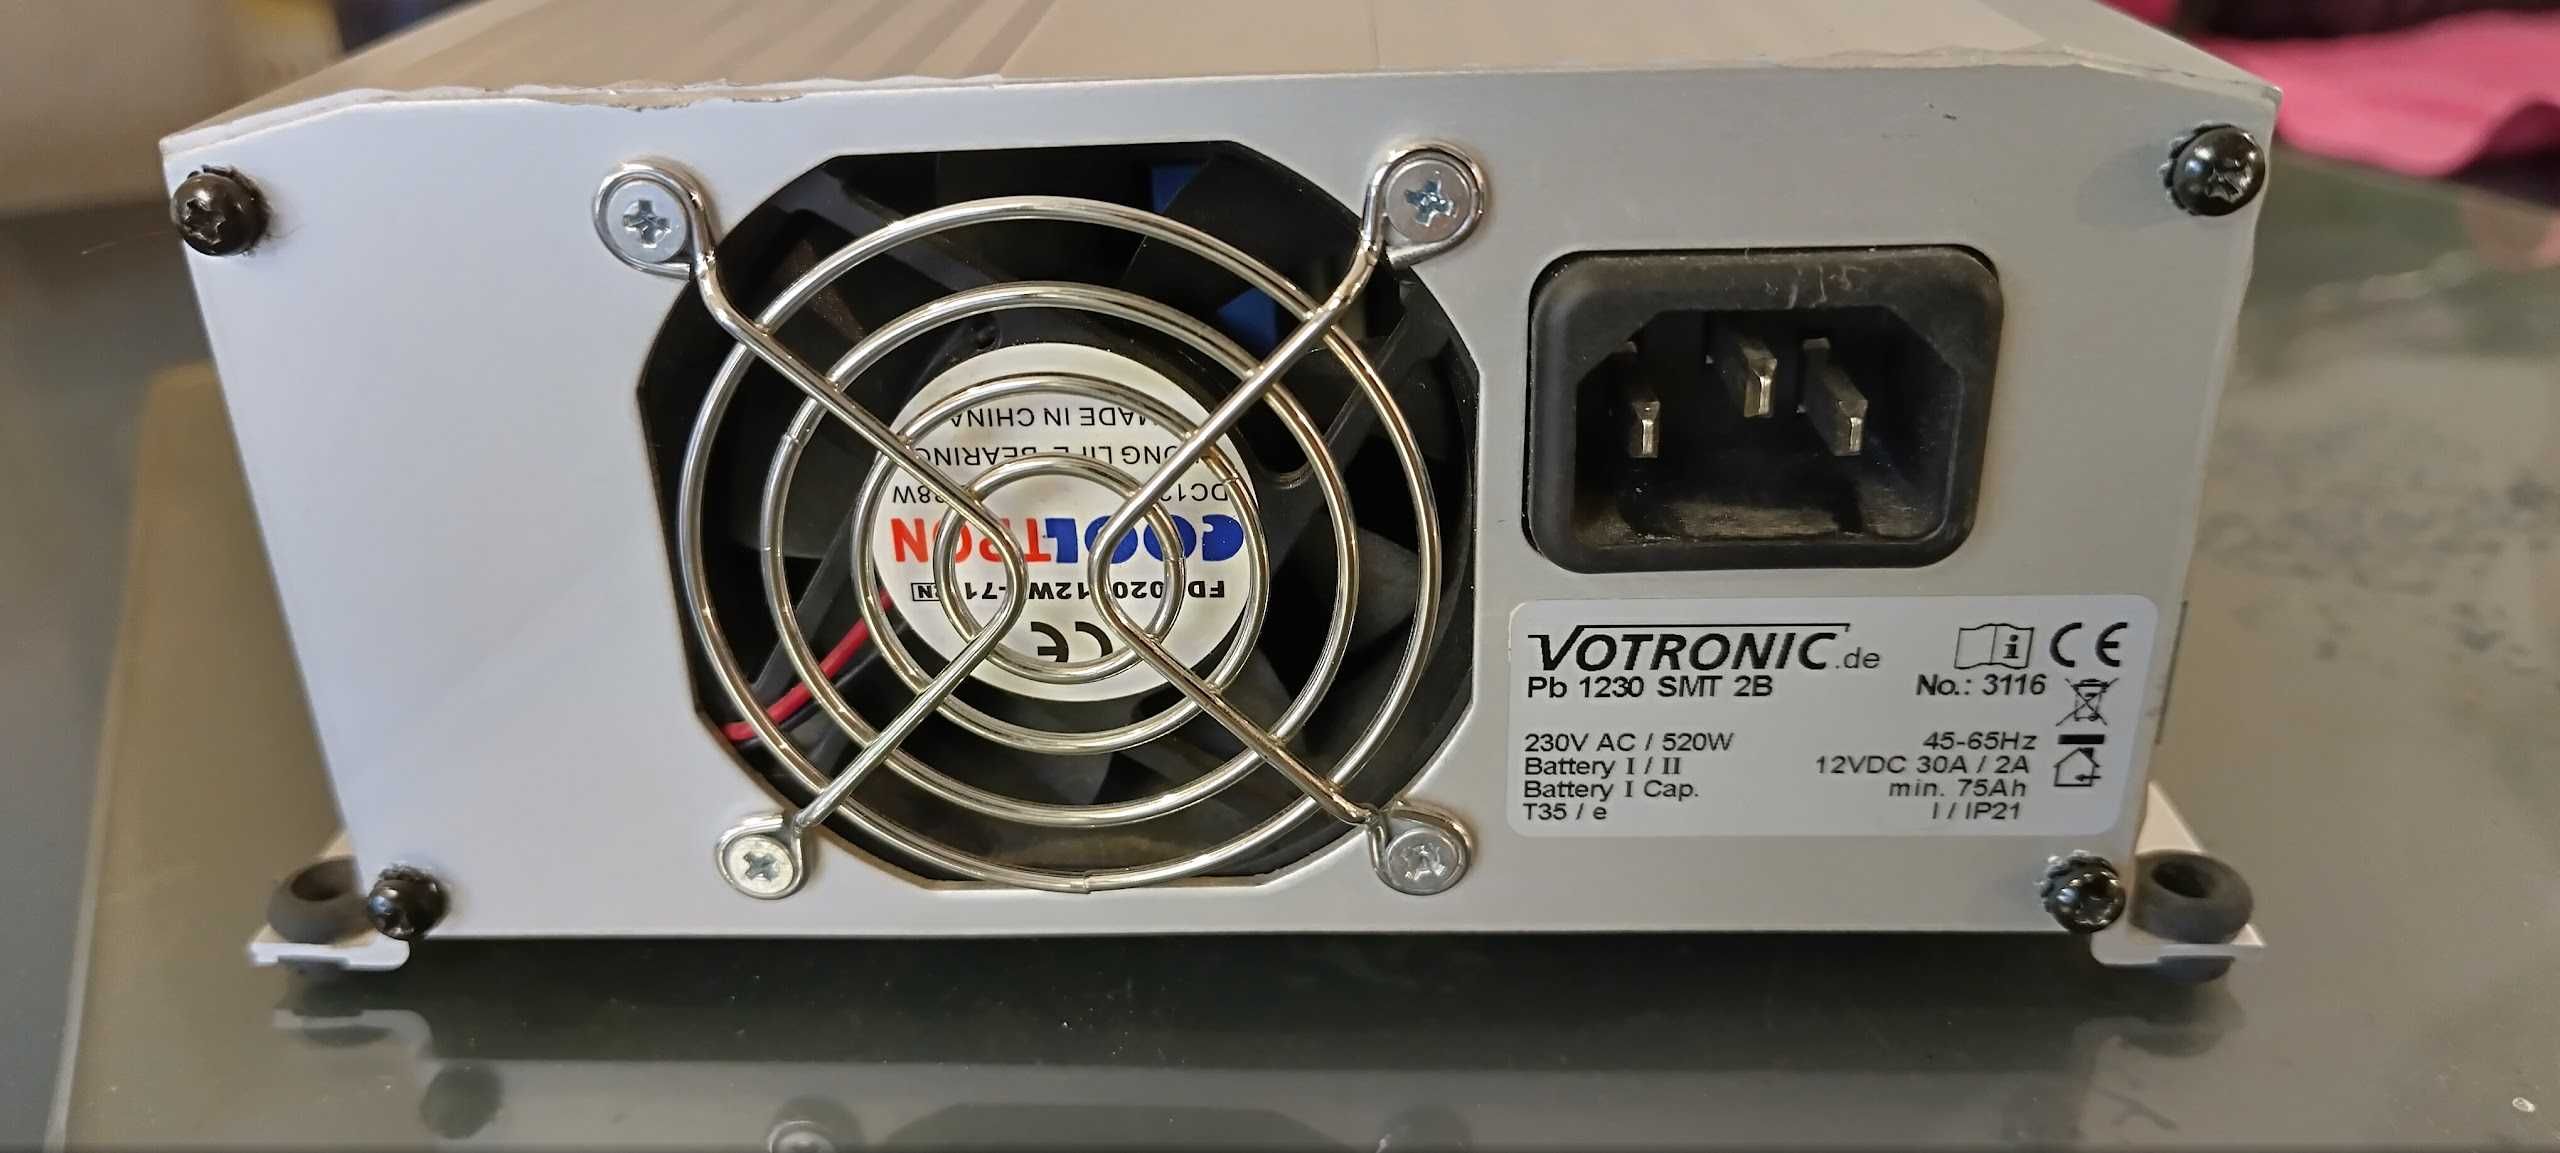 Зарядно автоматично Votronic Pb1230 smt2b